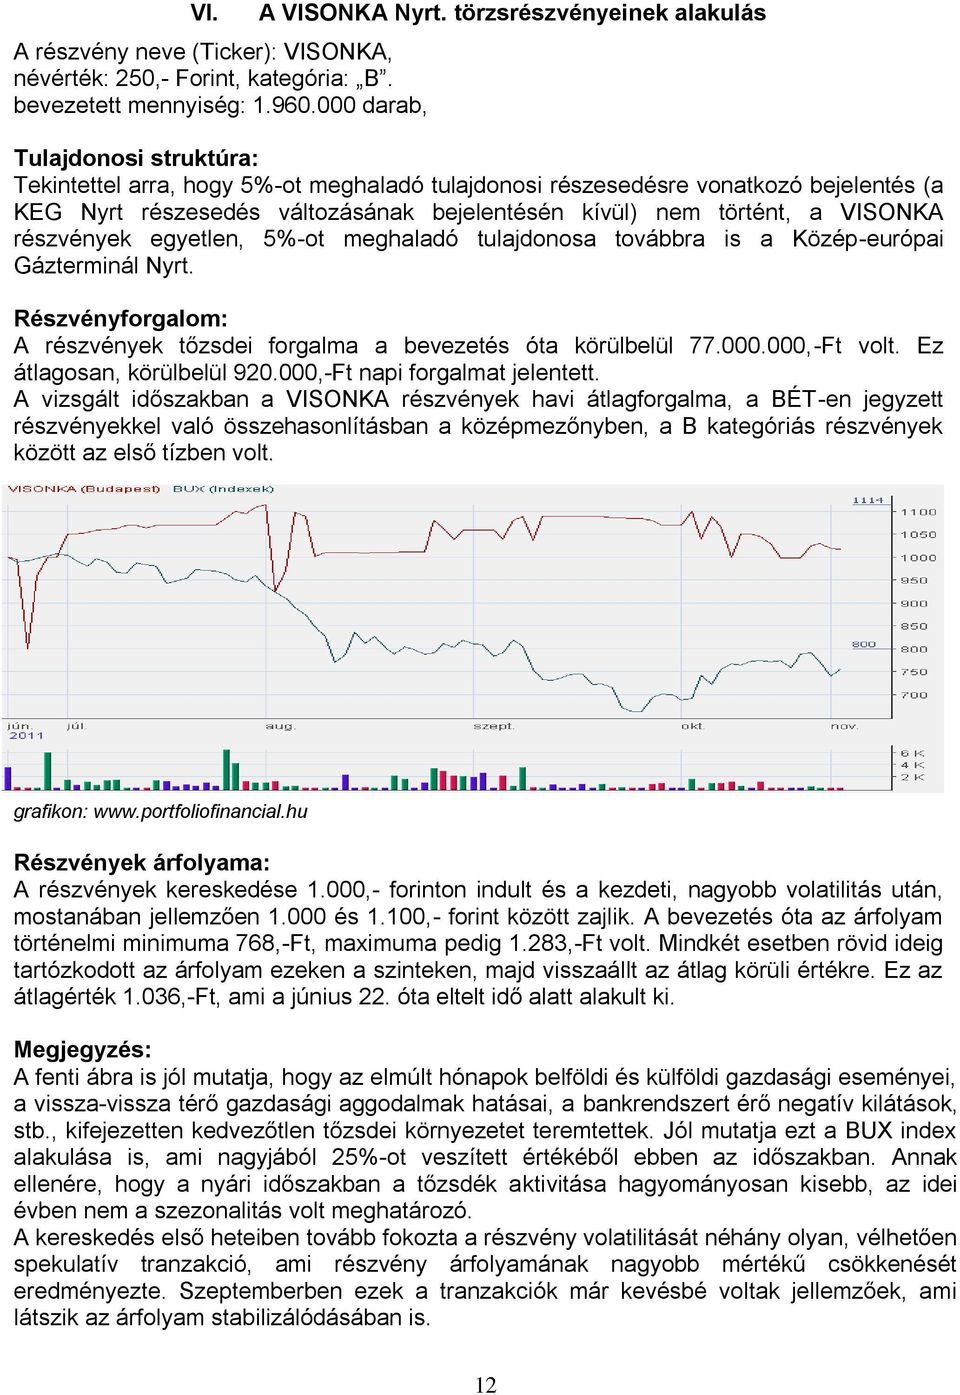 történt, a VISONKA részvények egyetlen, 5%-ot meghaladó tulajdonosa továbbra is a Közép-európai Gázterminál Nyrt. Részvényforgalom: A részvények tőzsdei forgalma a bevezetés óta körülbelül 77.000.